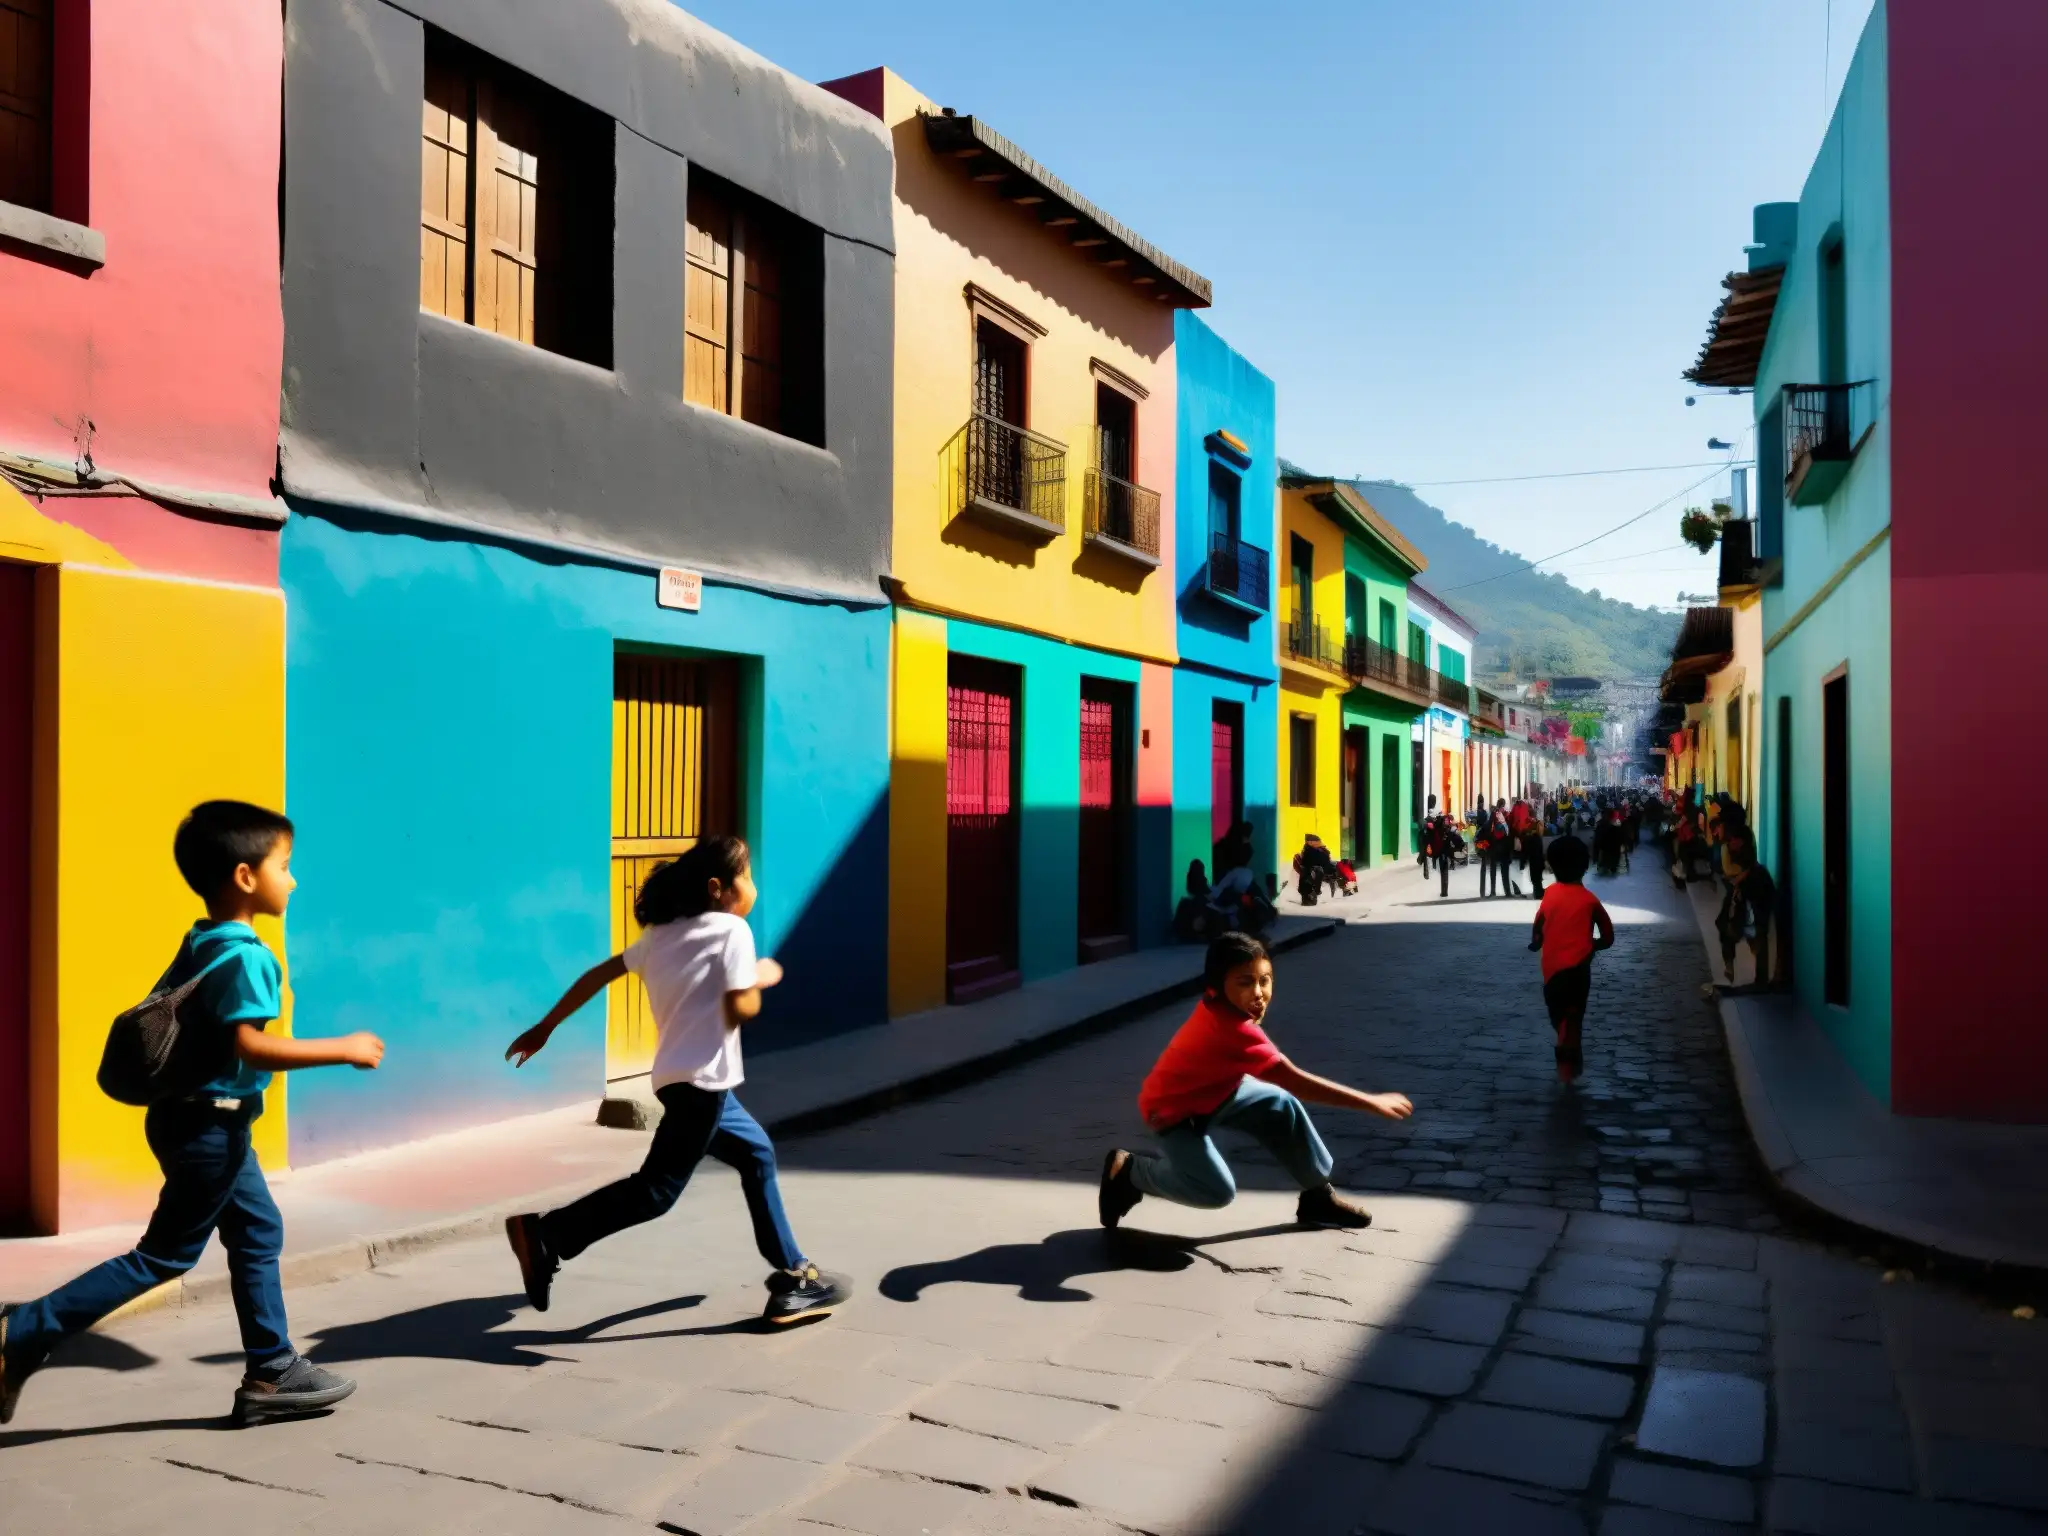 Una calle bulliciosa de la Ciudad de México, con edificios coloridos y murales vibrantes